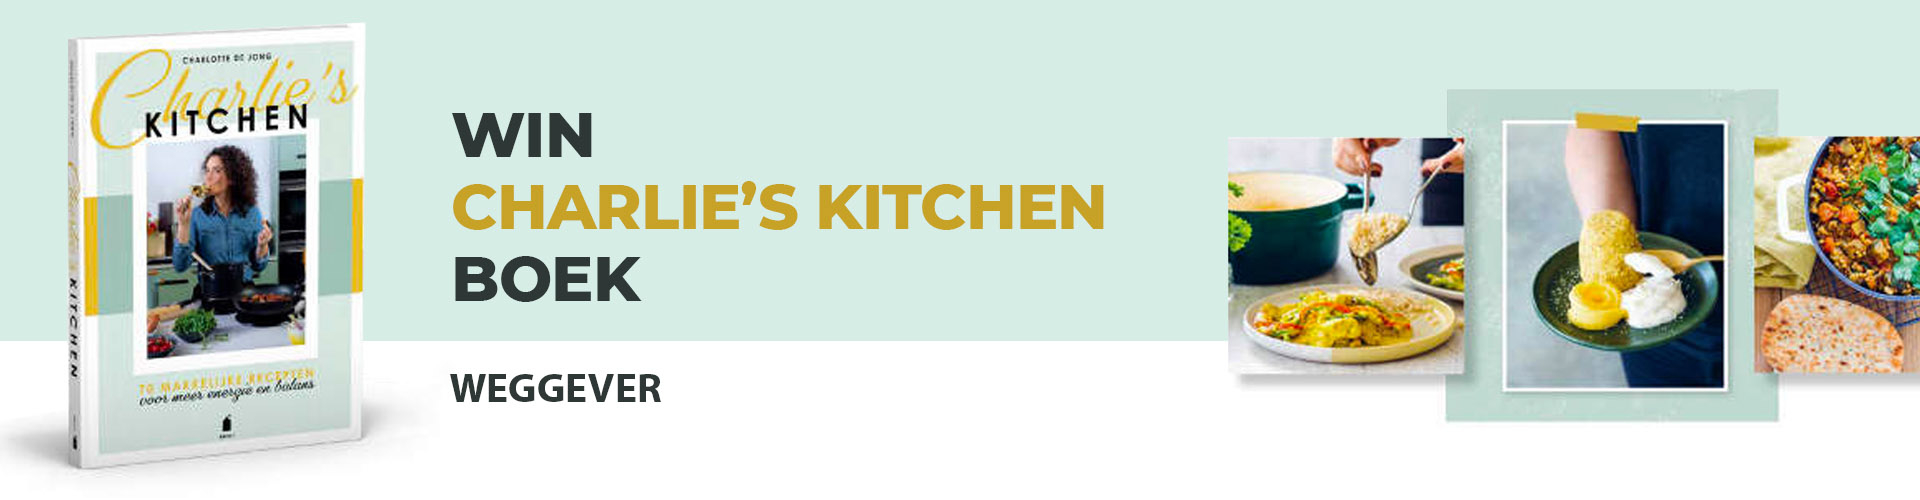 Charlies kitchen header image